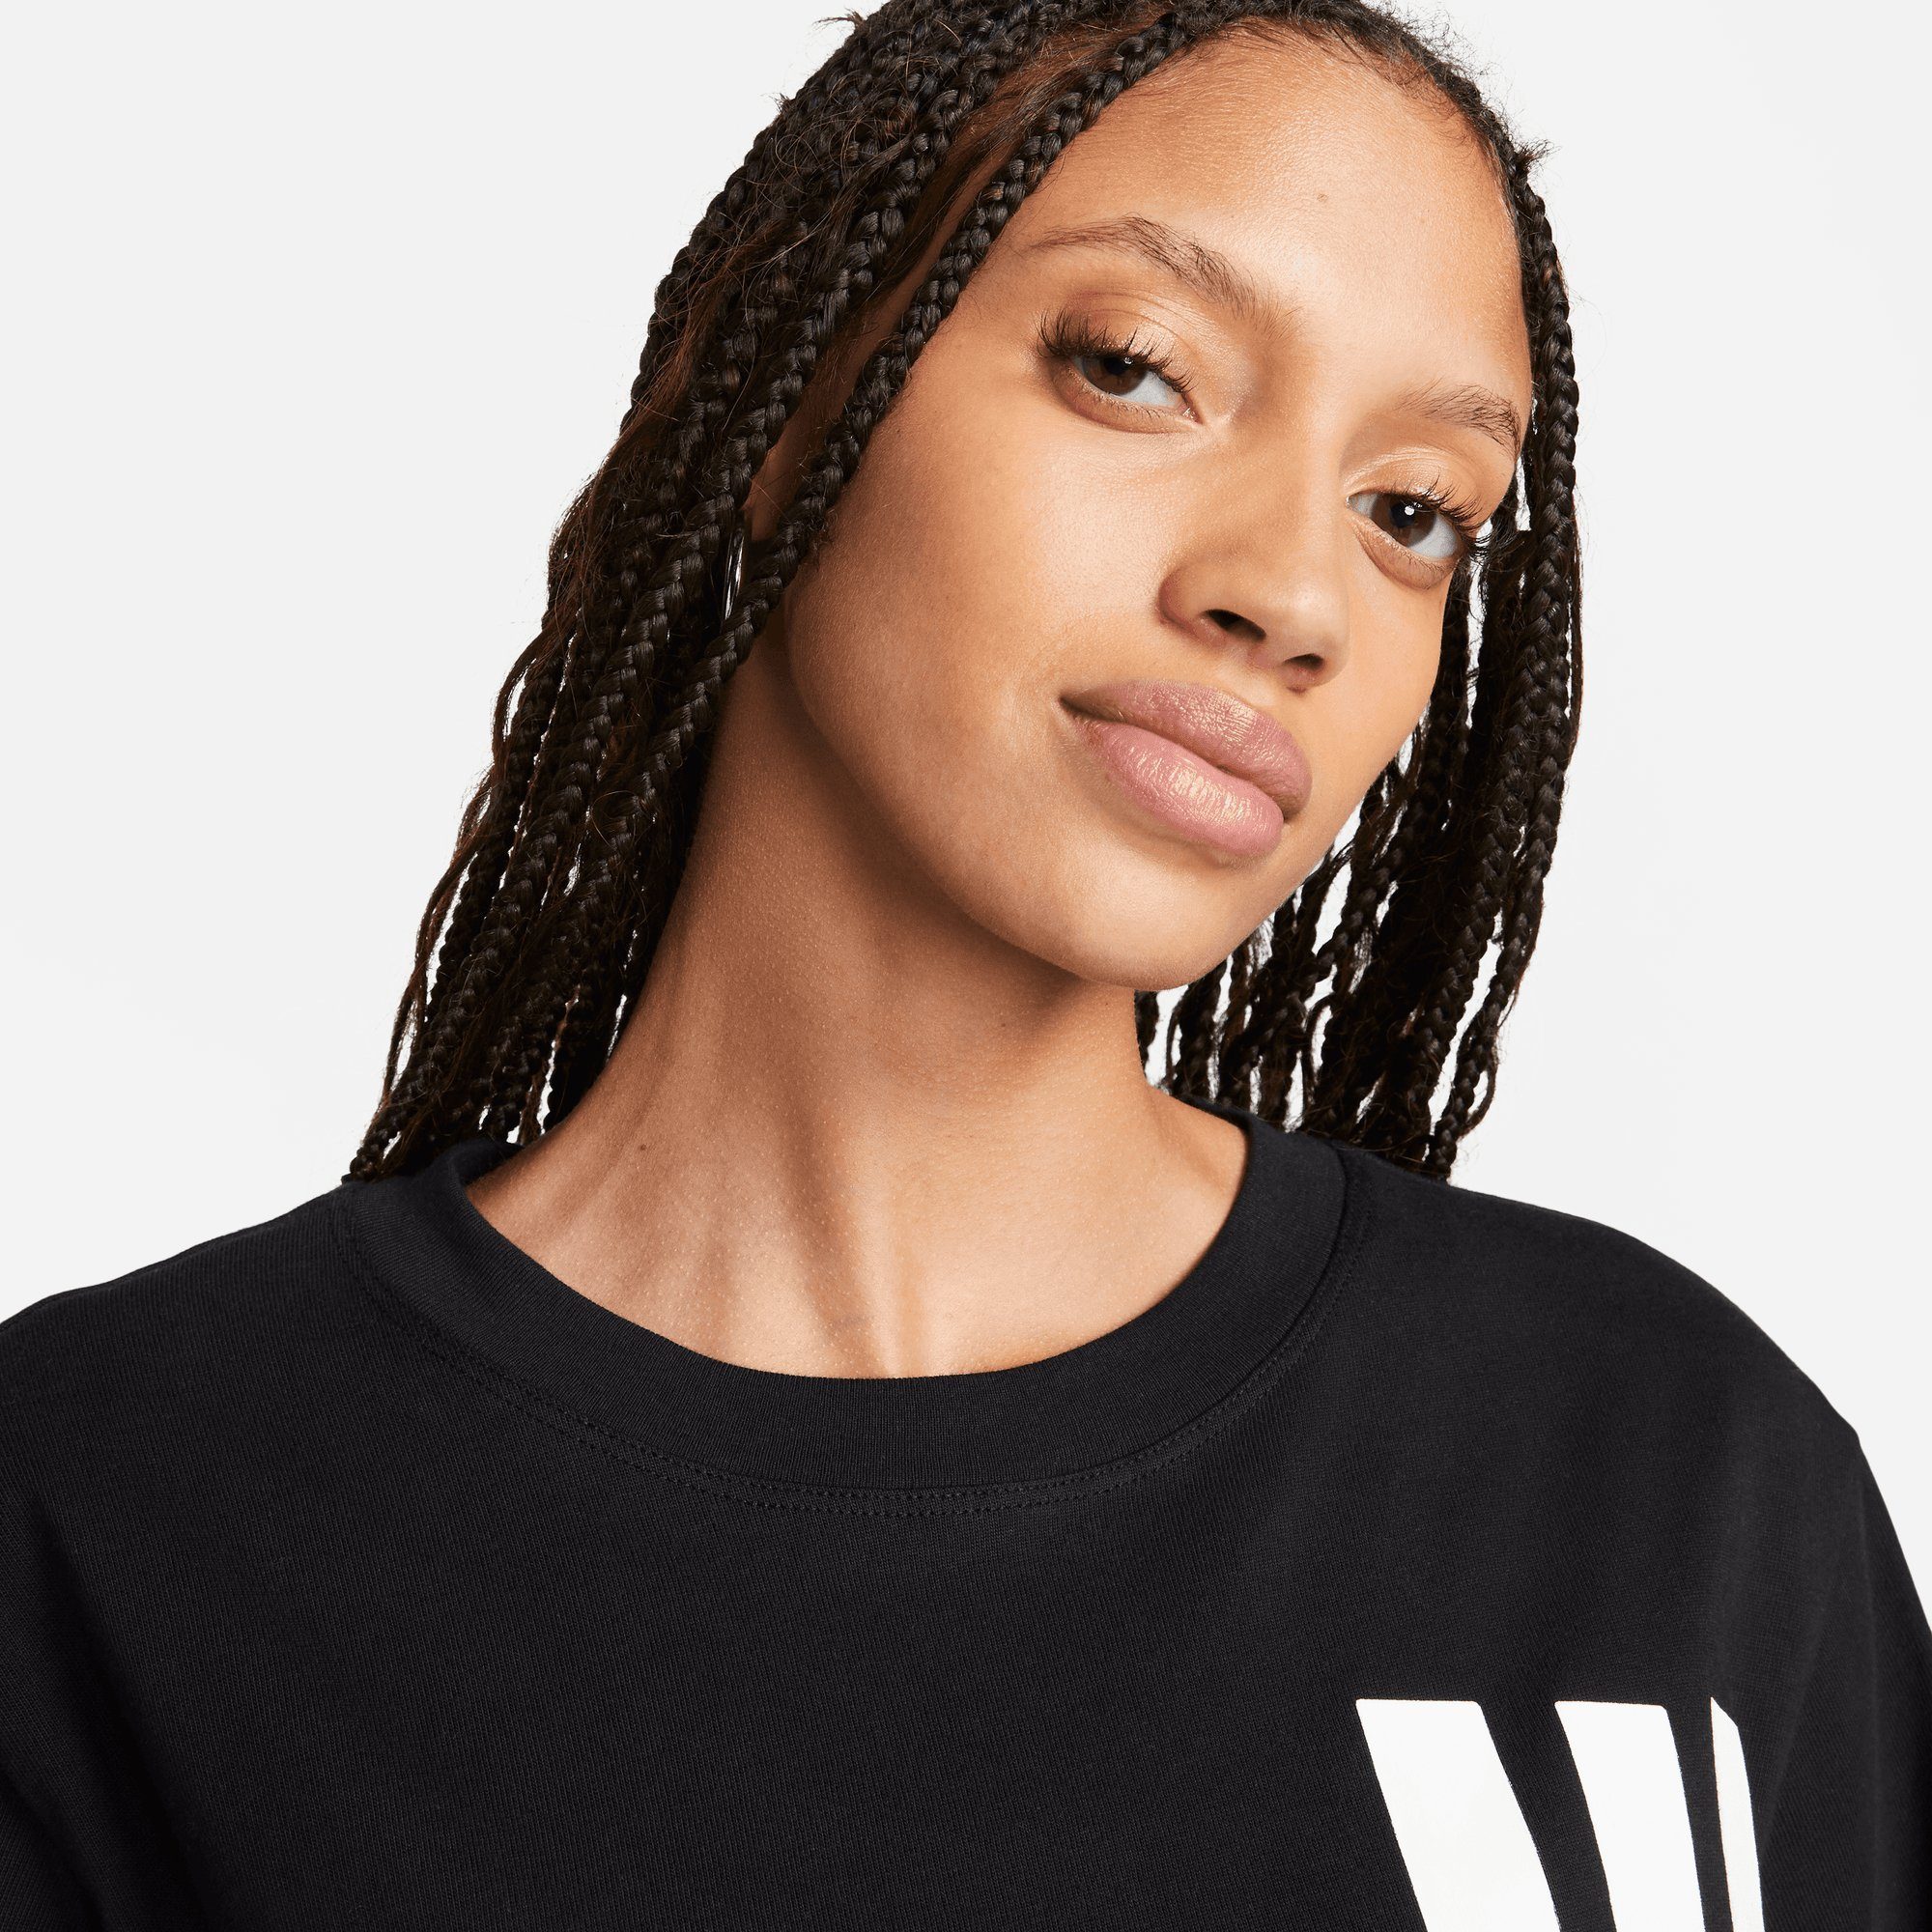 T-Shirt WOMEN'S Nike AIR T-SHIRT Sportswear